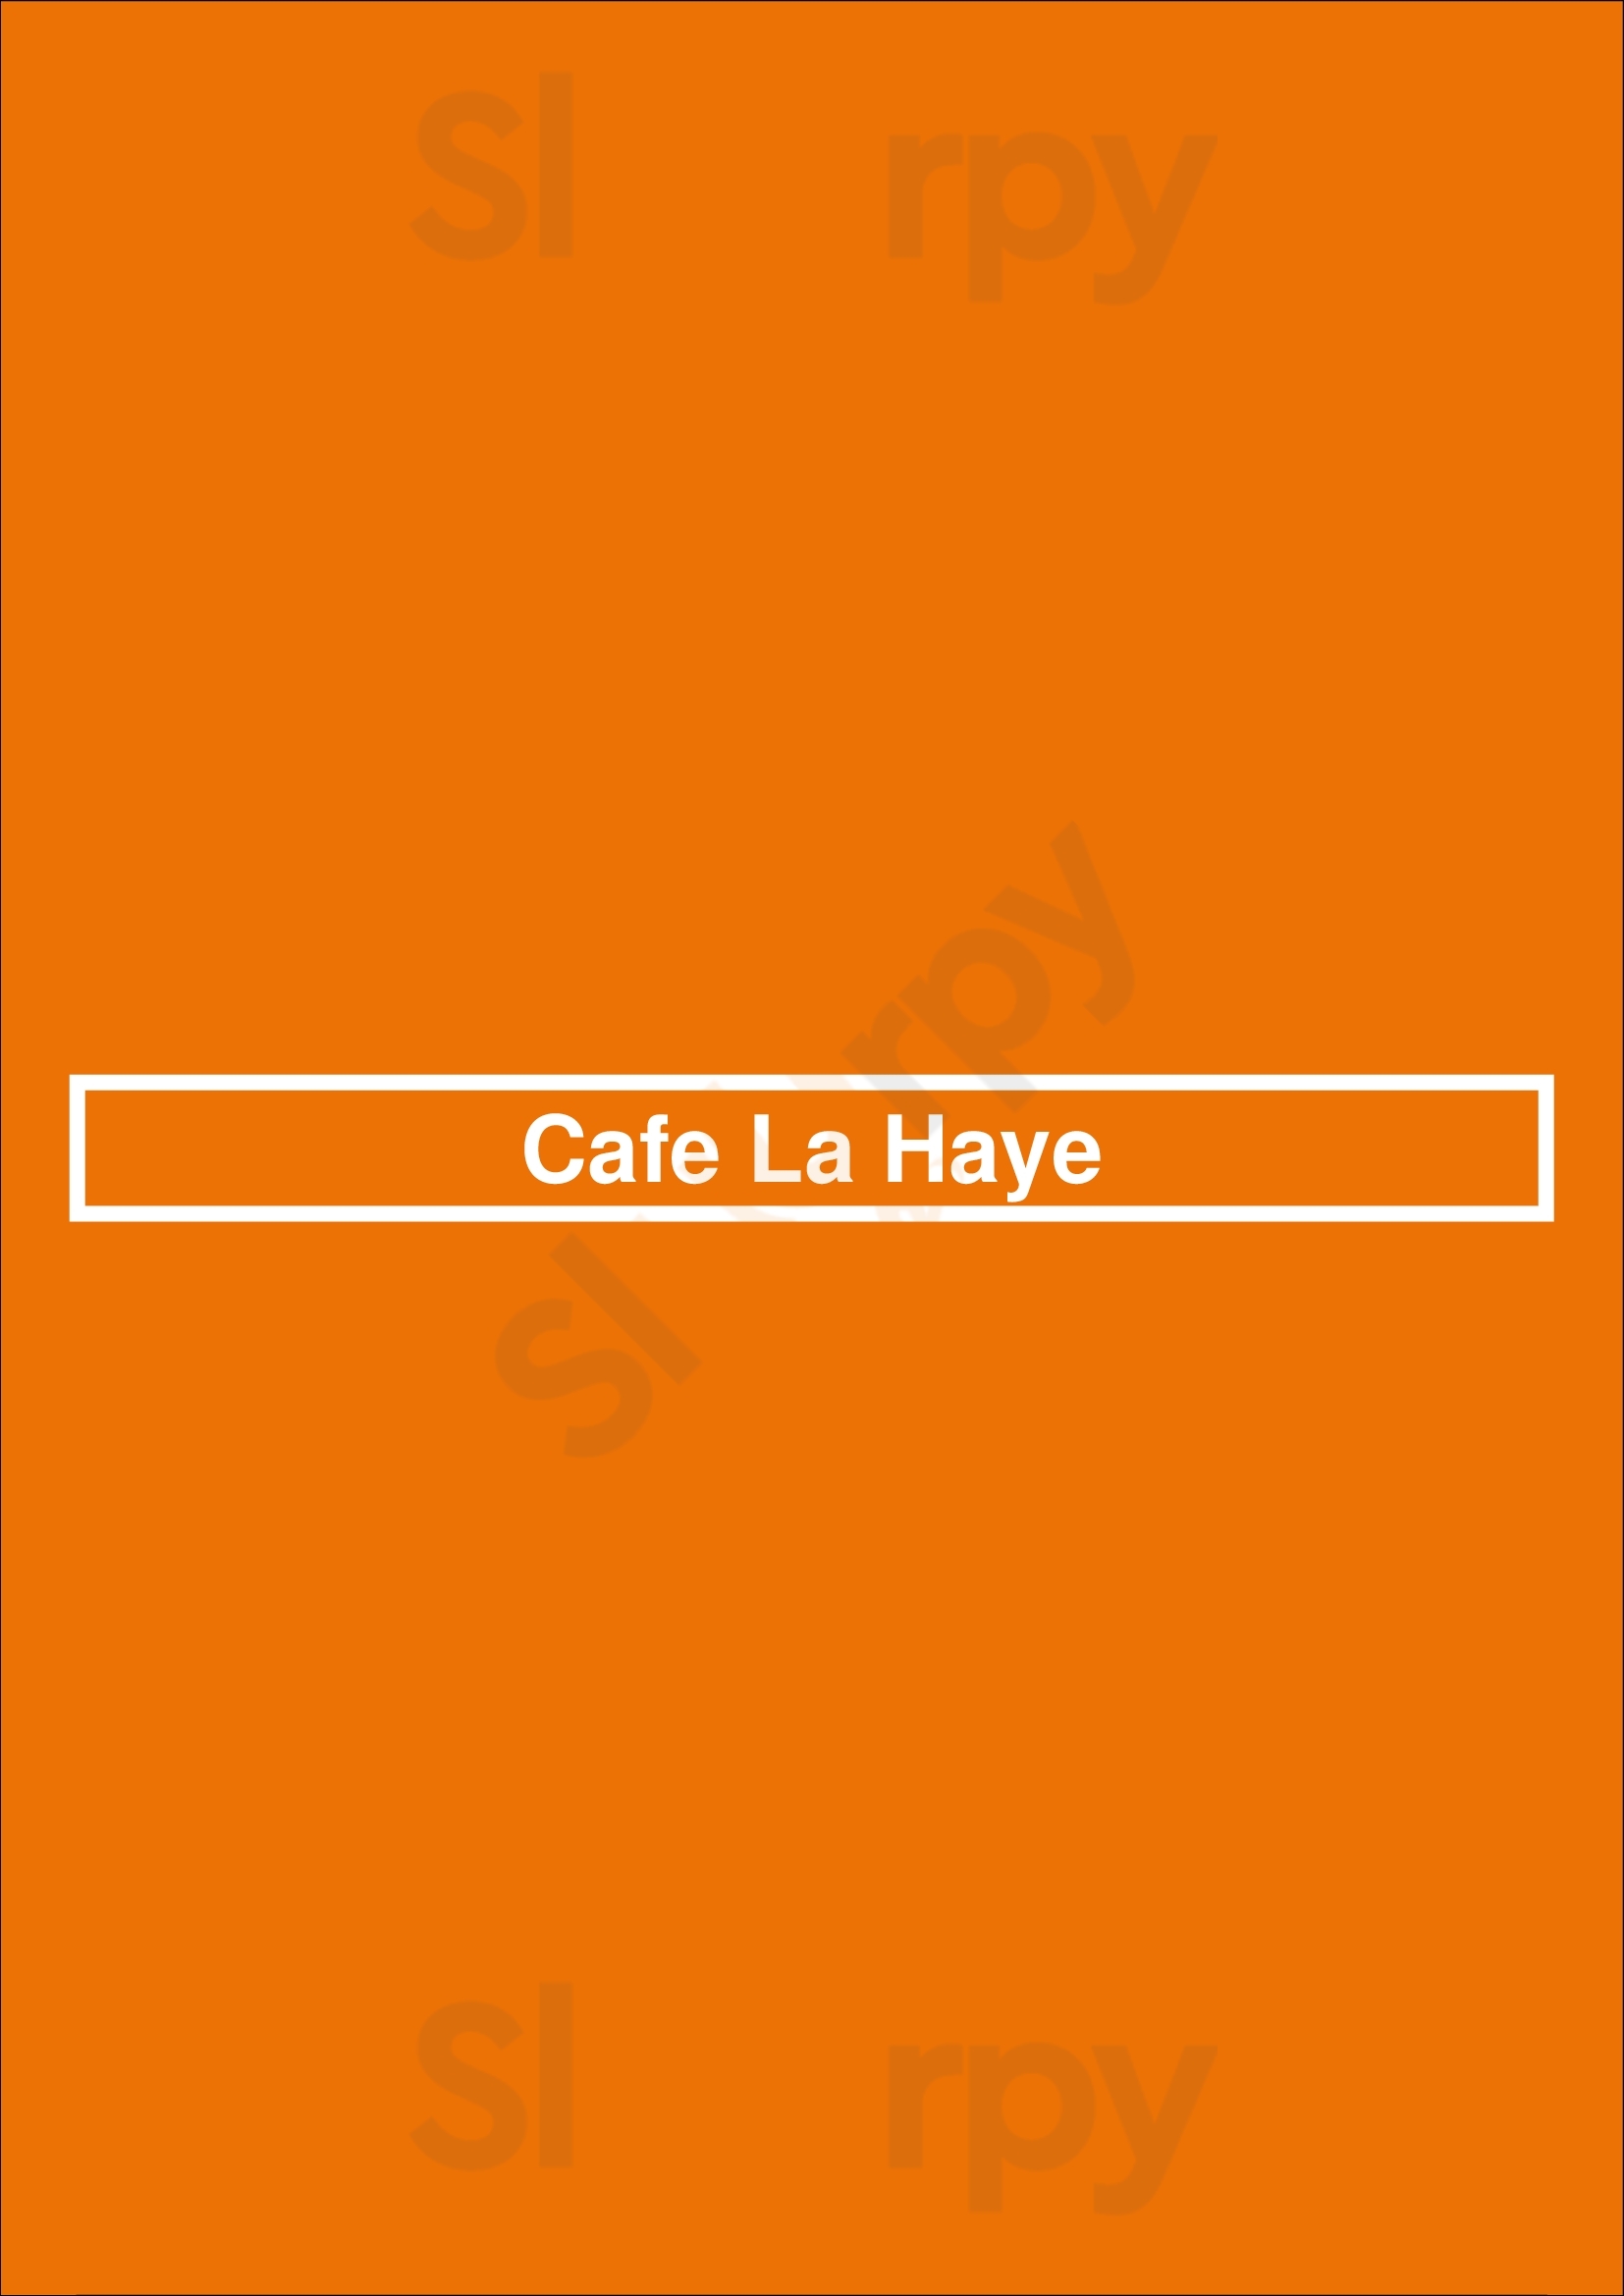 Cafe La Haye Sonoma Menu - 1